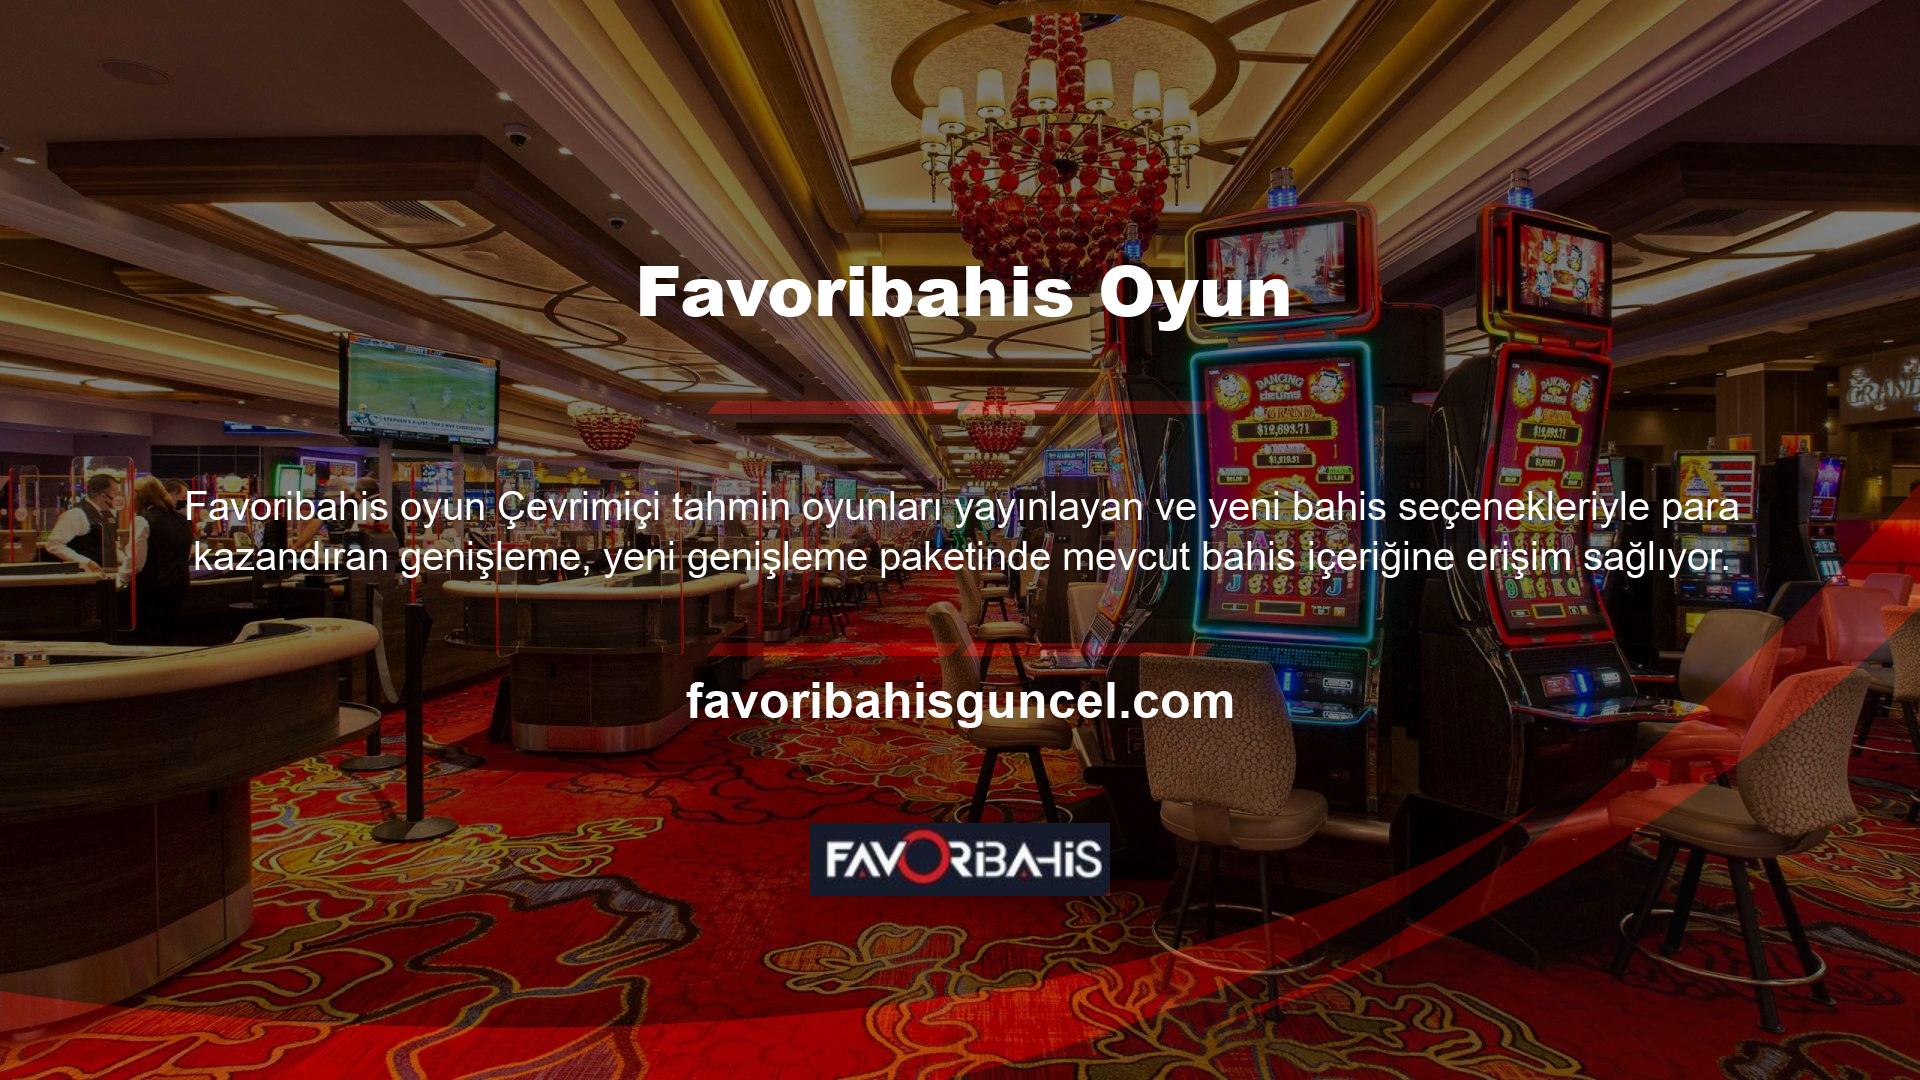 Türk Favoribahis, canlı ve sanal bahis oyunları ve gizlilik sunar